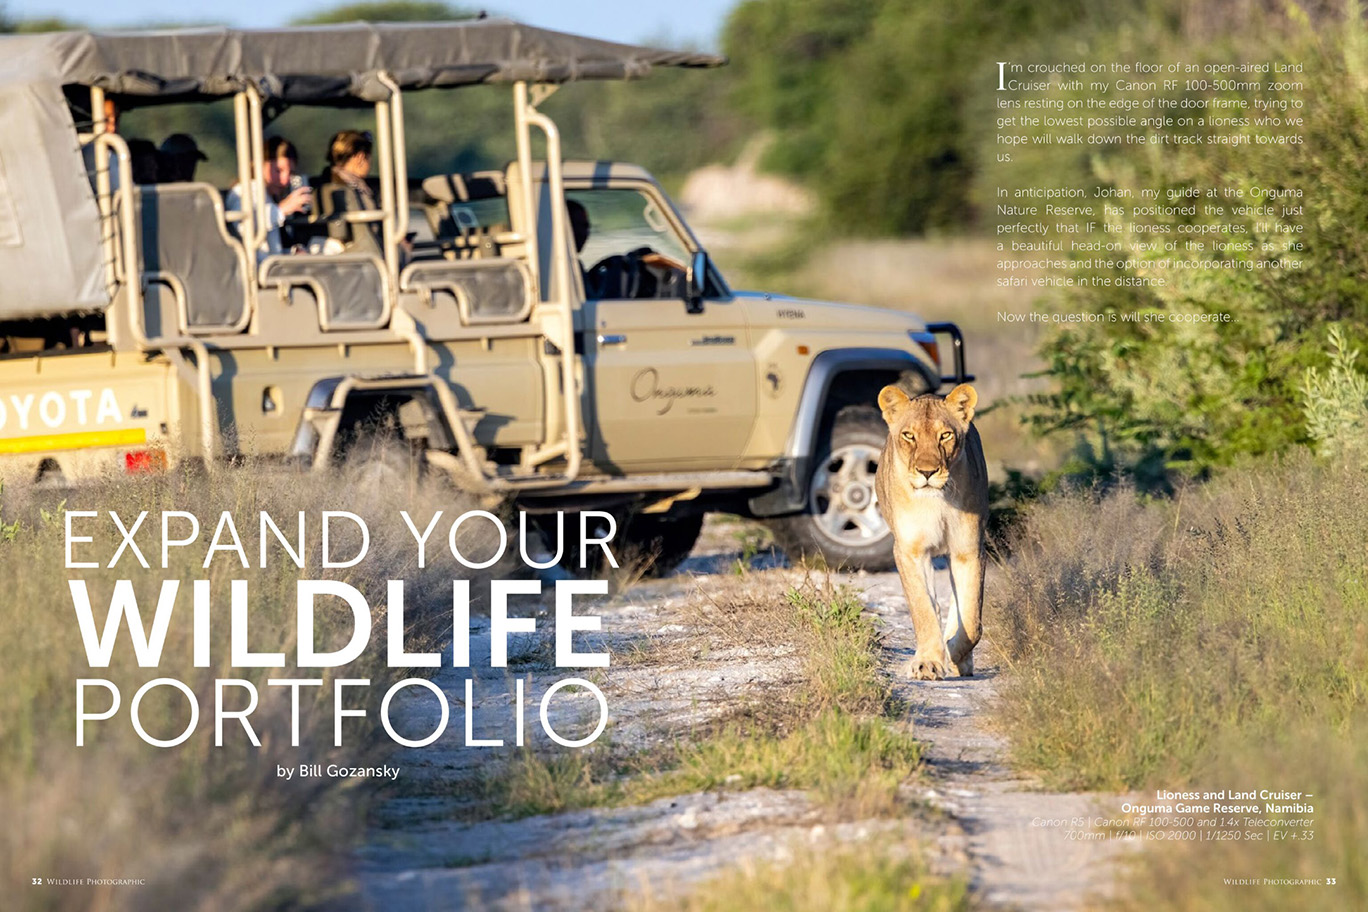 Wildlife Photographic Issue 63